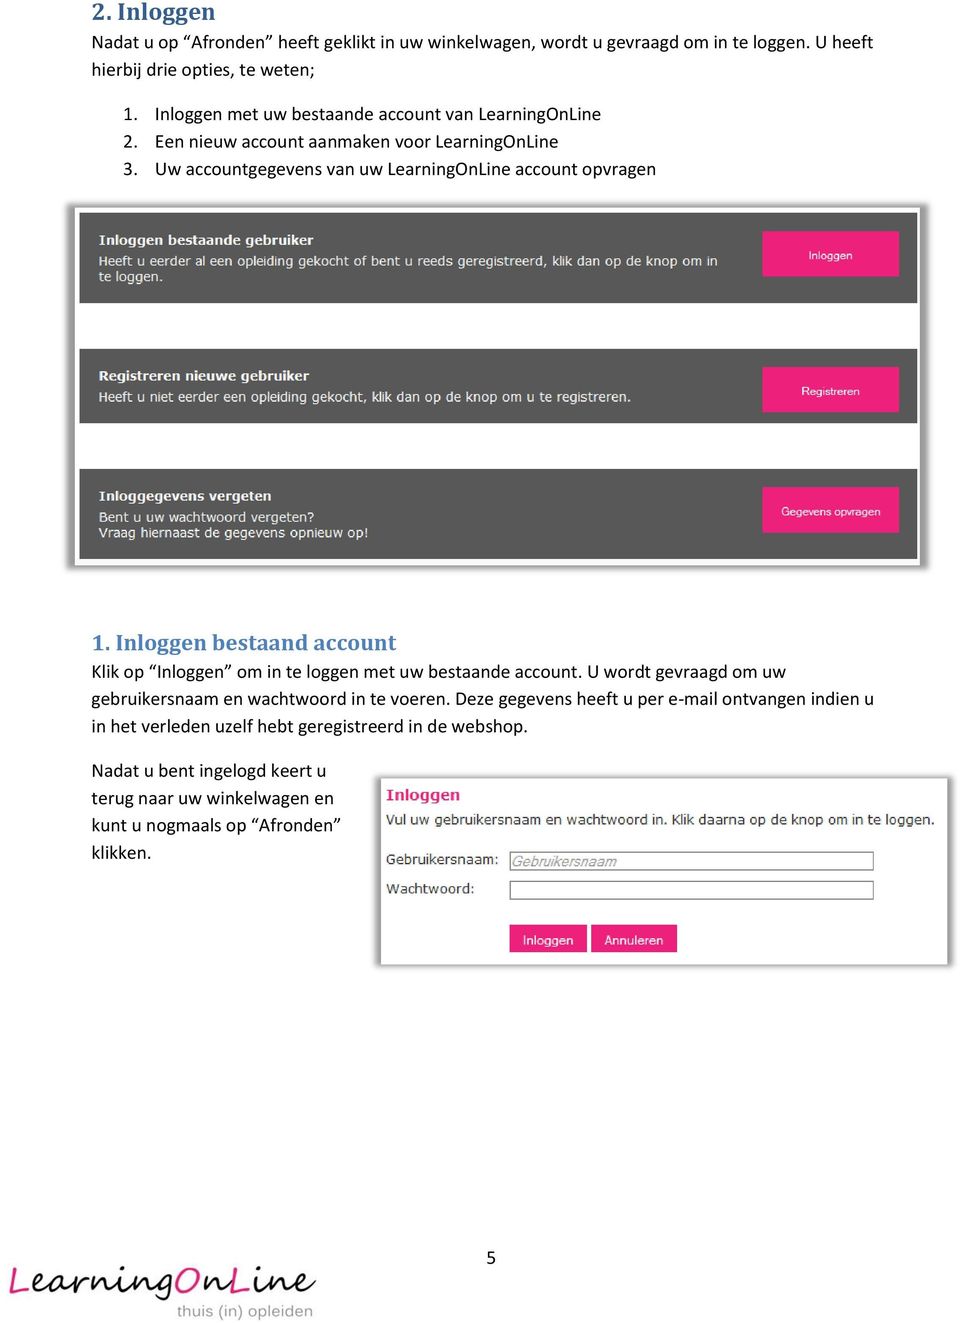 Inloggen bestaand account Klik op Inloggen om in te loggen met uw bestaande account. U wordt gevraagd om uw gebruikersnaam en wachtwoord in te voeren.